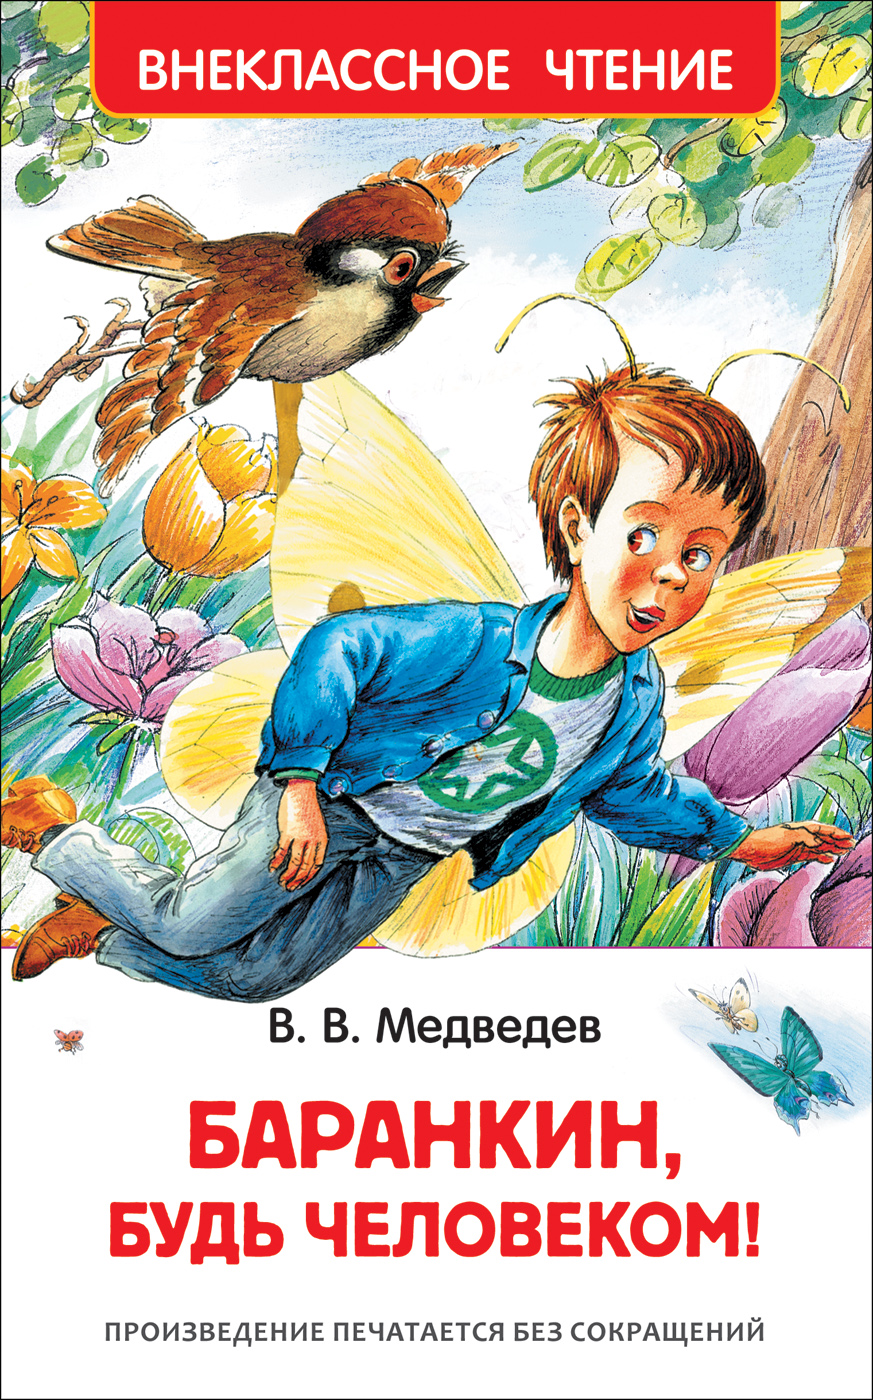 Книга 29897 "Баранкин, будь человекмо" ВЧ  Росмэн - Ижевск 